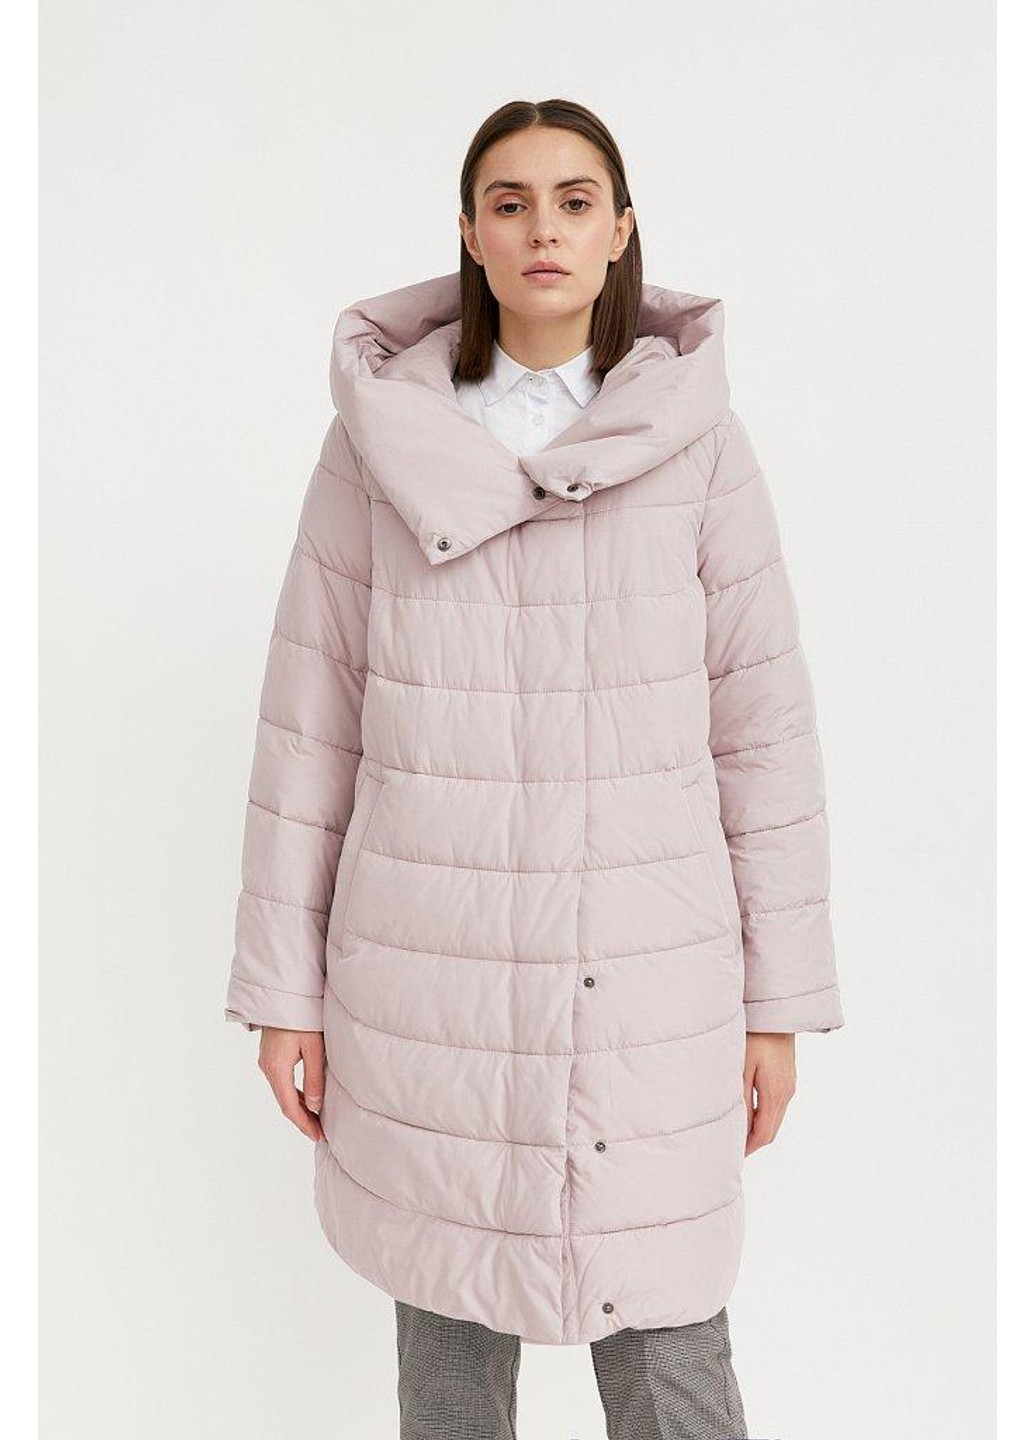 Розовая зимняя куртка w20-32042-812 Finn Flare